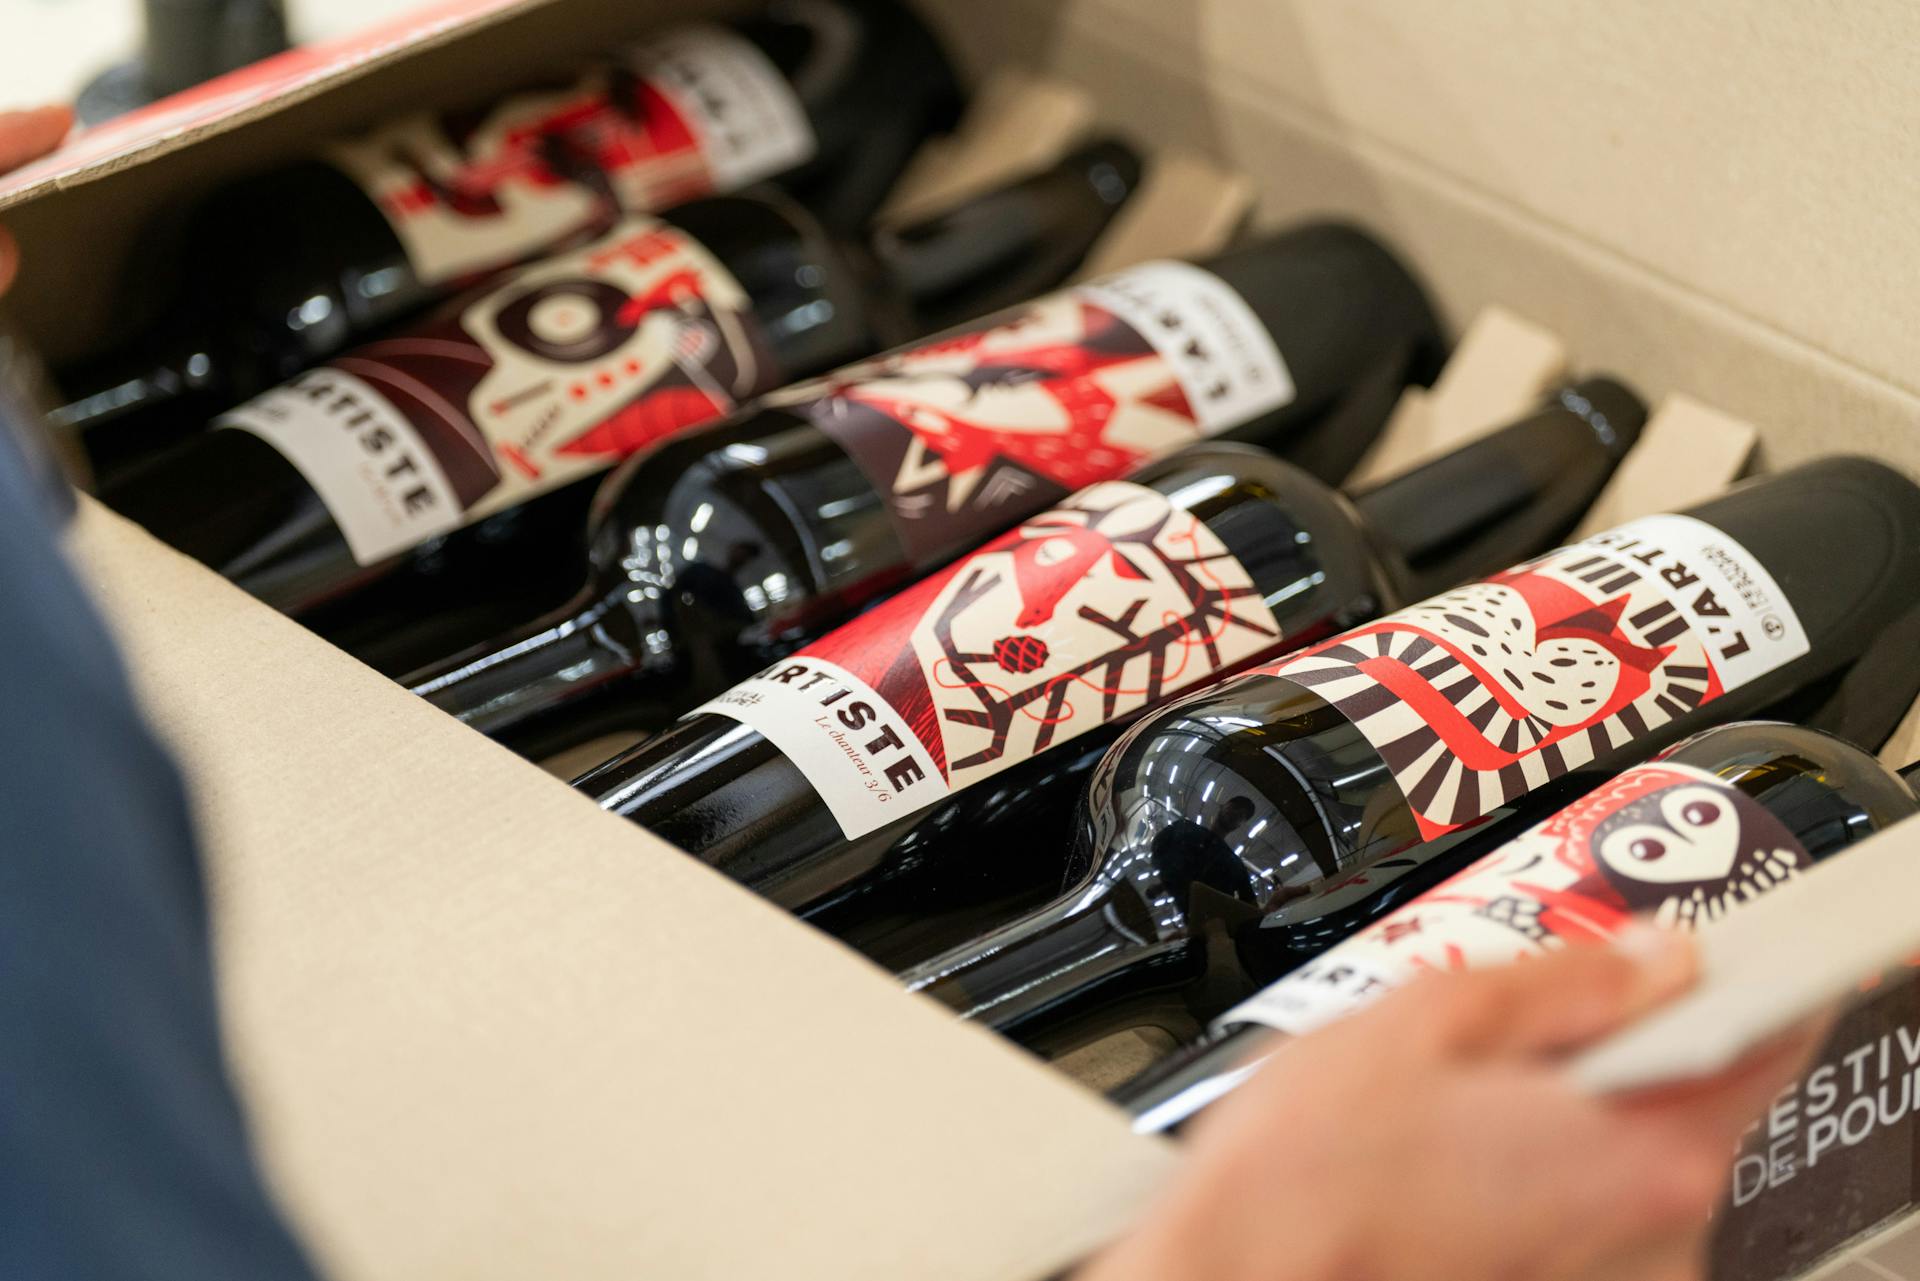 Une personne ouvrant un carton de bouteilles de vins de la cuvée du Festival de Poupet, arborant les étiquettes créés par l'agence de design Katra.